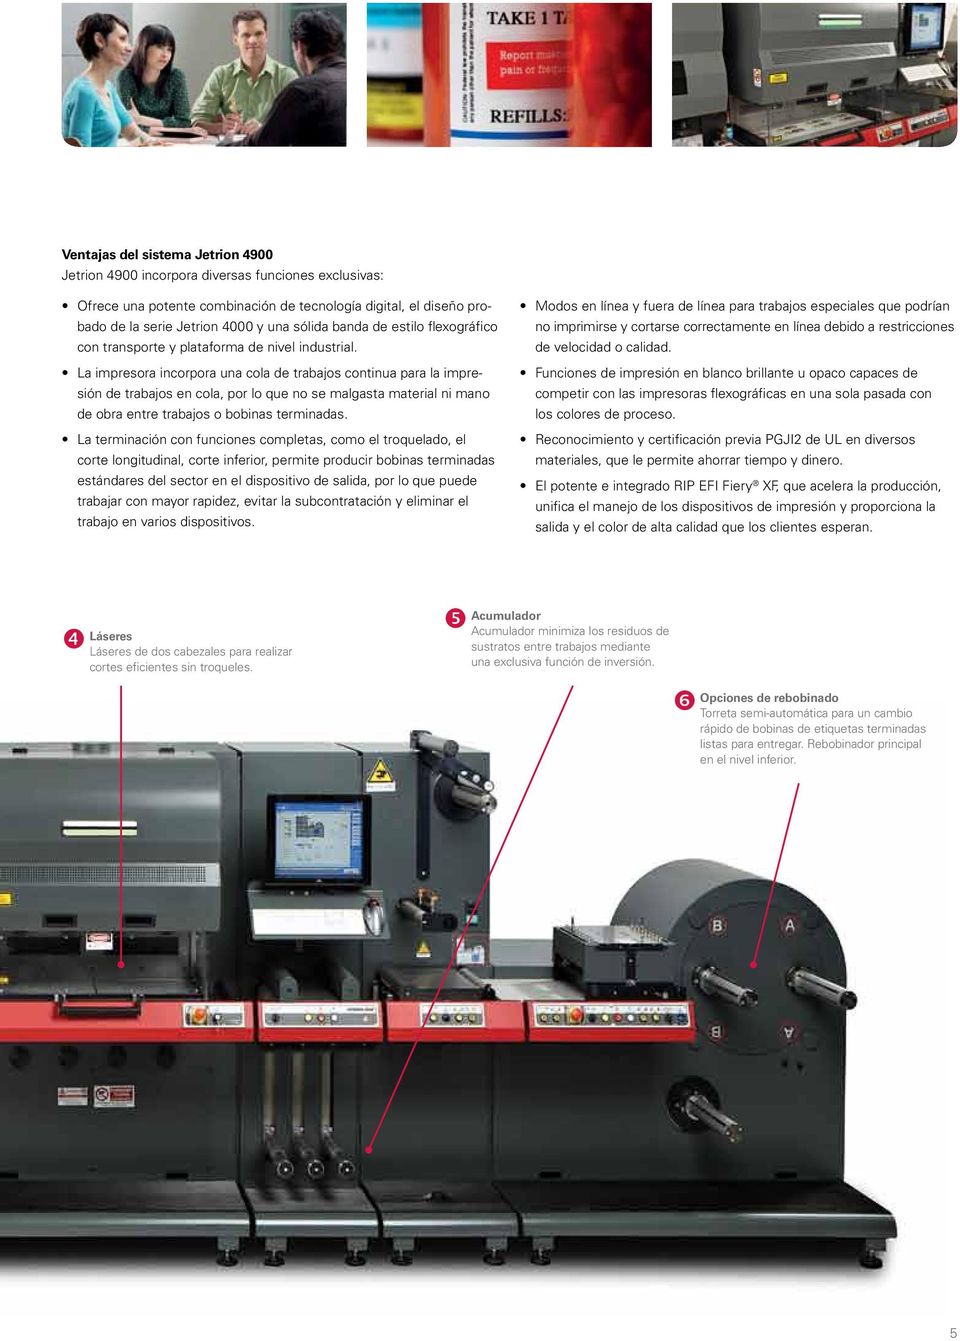 La impresora incorpora una cola de trabajos continua para la impresión de trabajos en cola, por lo que no se malgasta material ni mano de obra entre trabajos o bobinas terminadas.